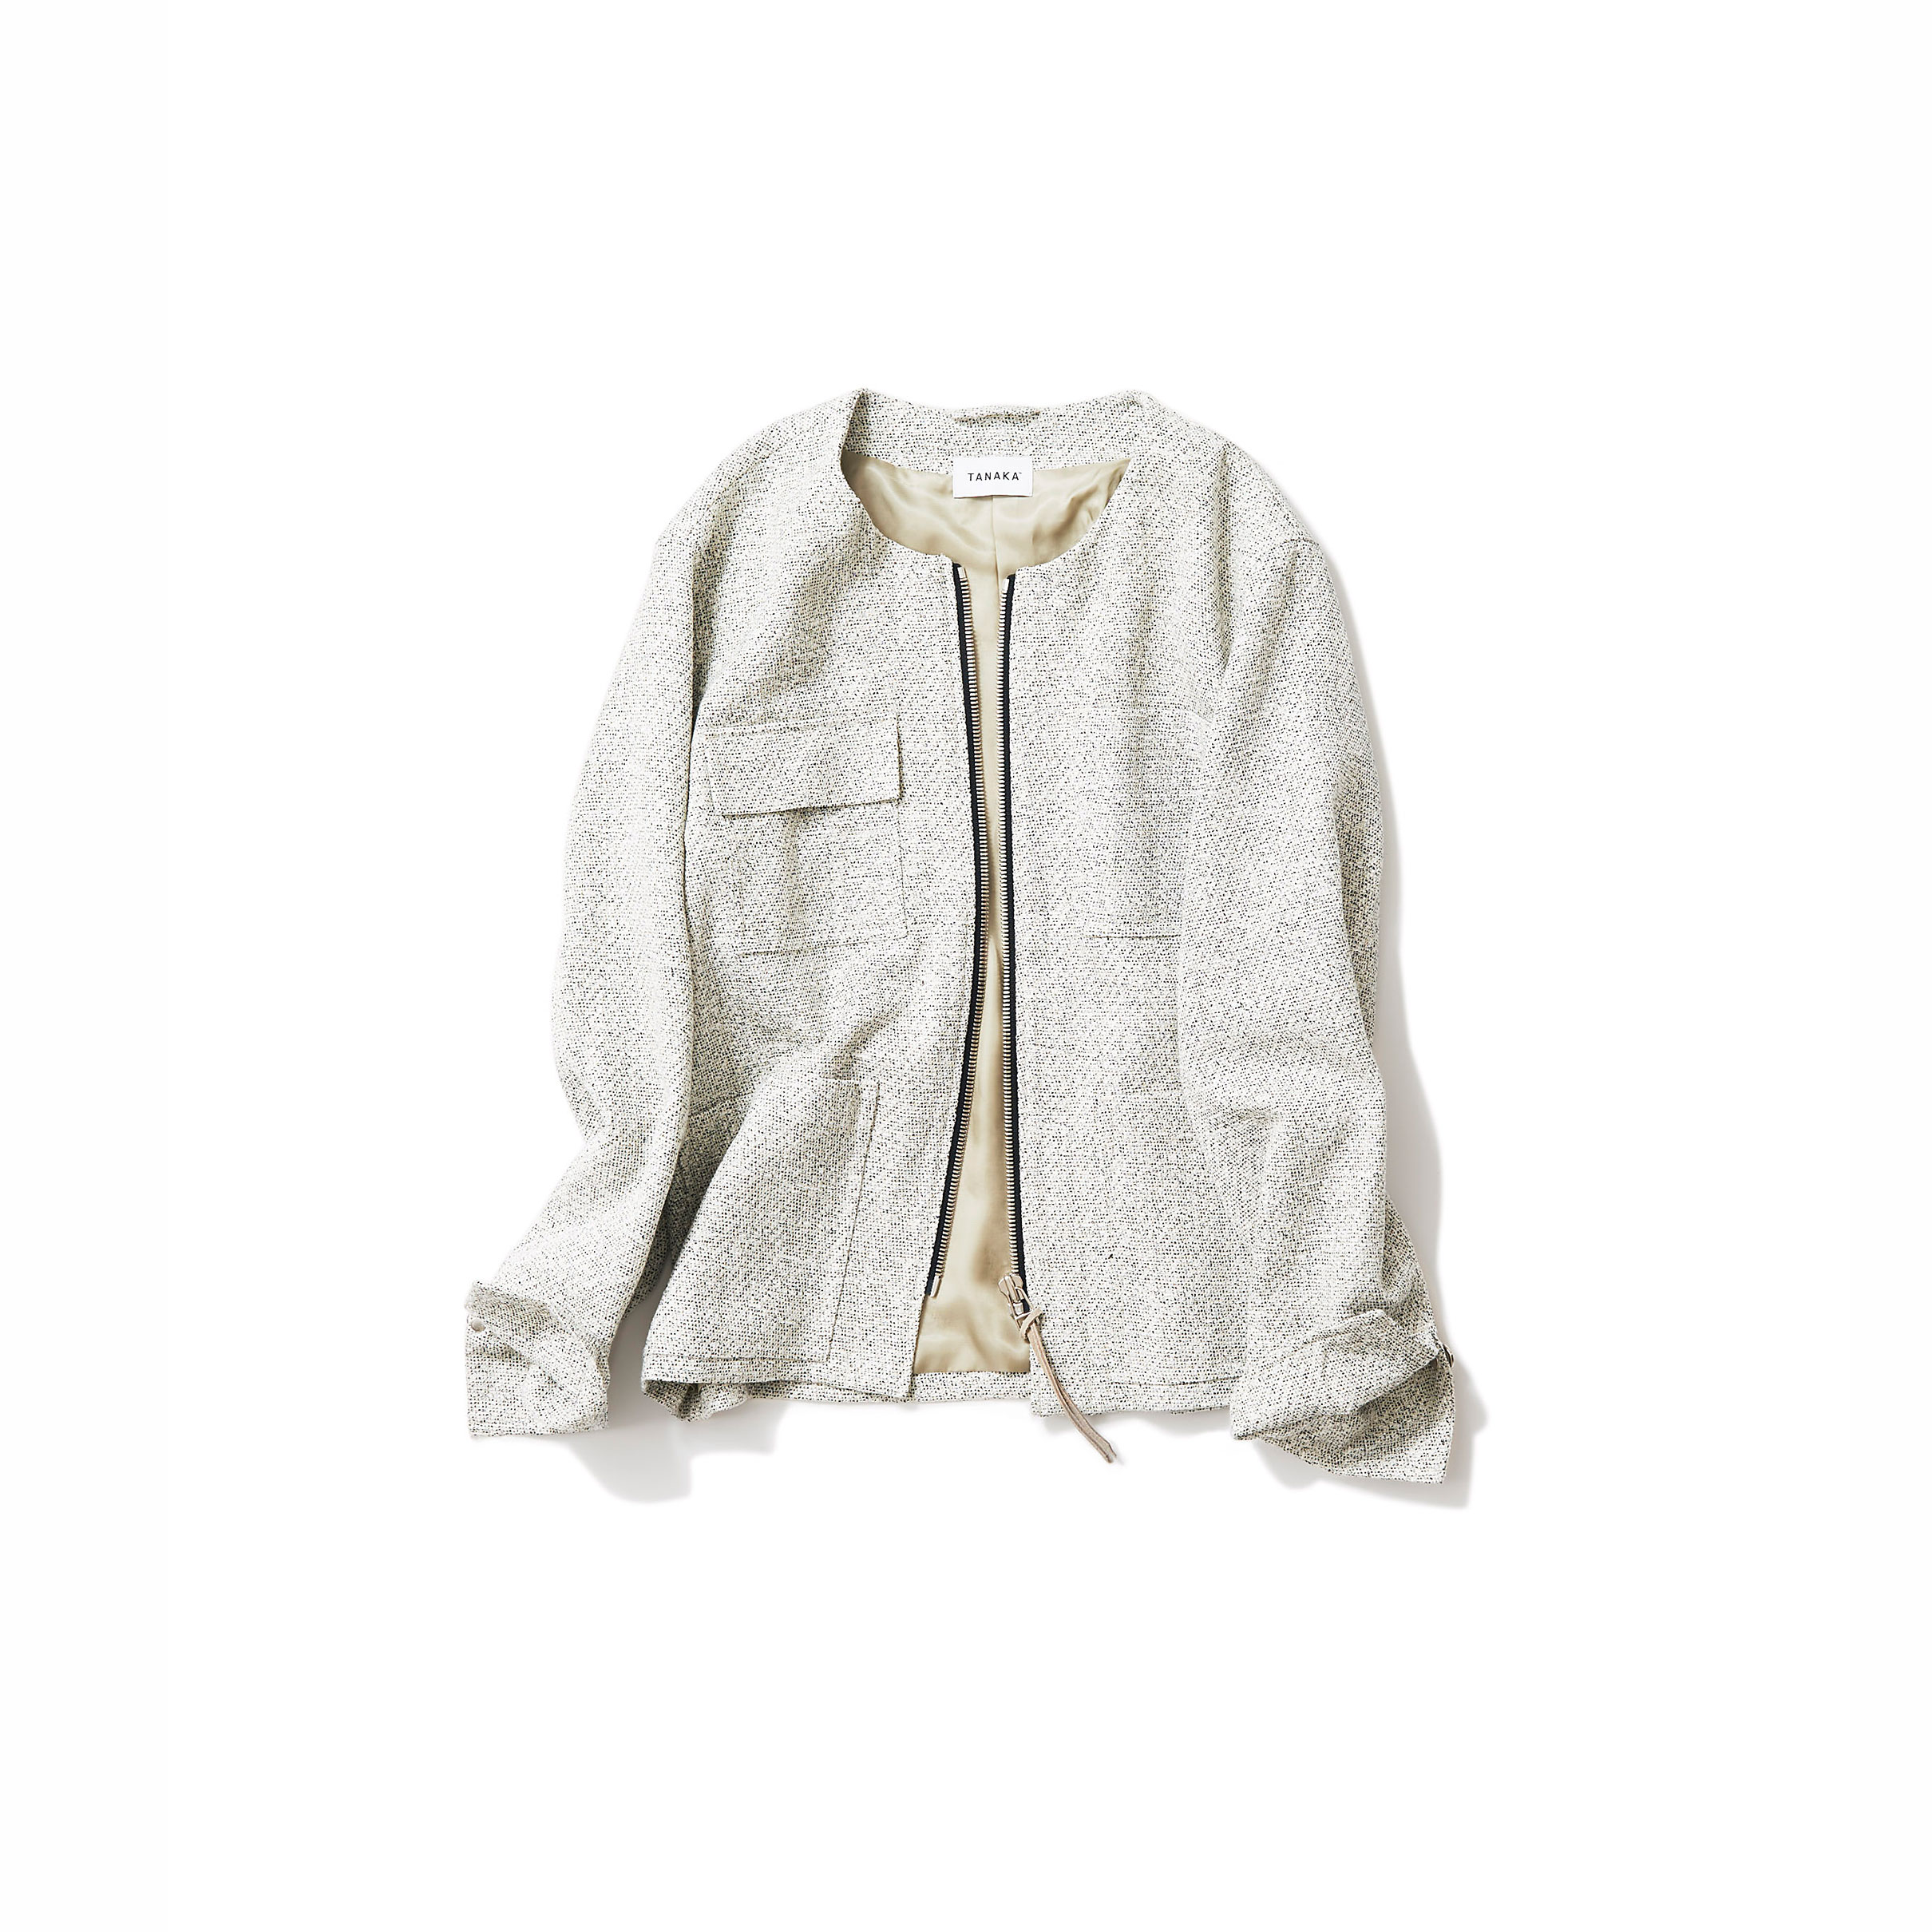 cotton tweed jacket in vintage mood